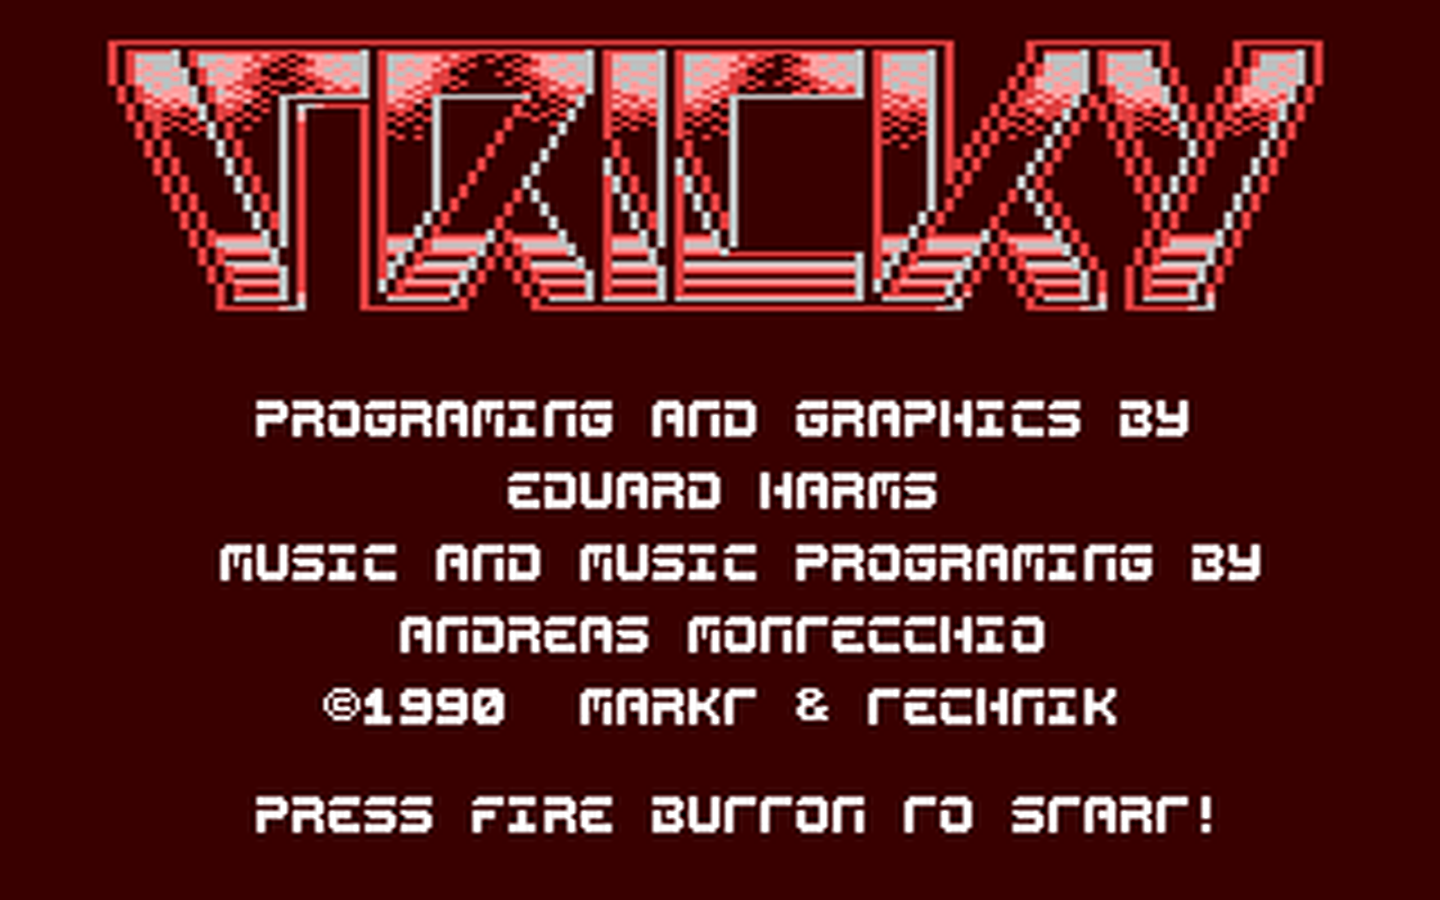 C64 GameBase Tricky Markt_&_Technik 1990